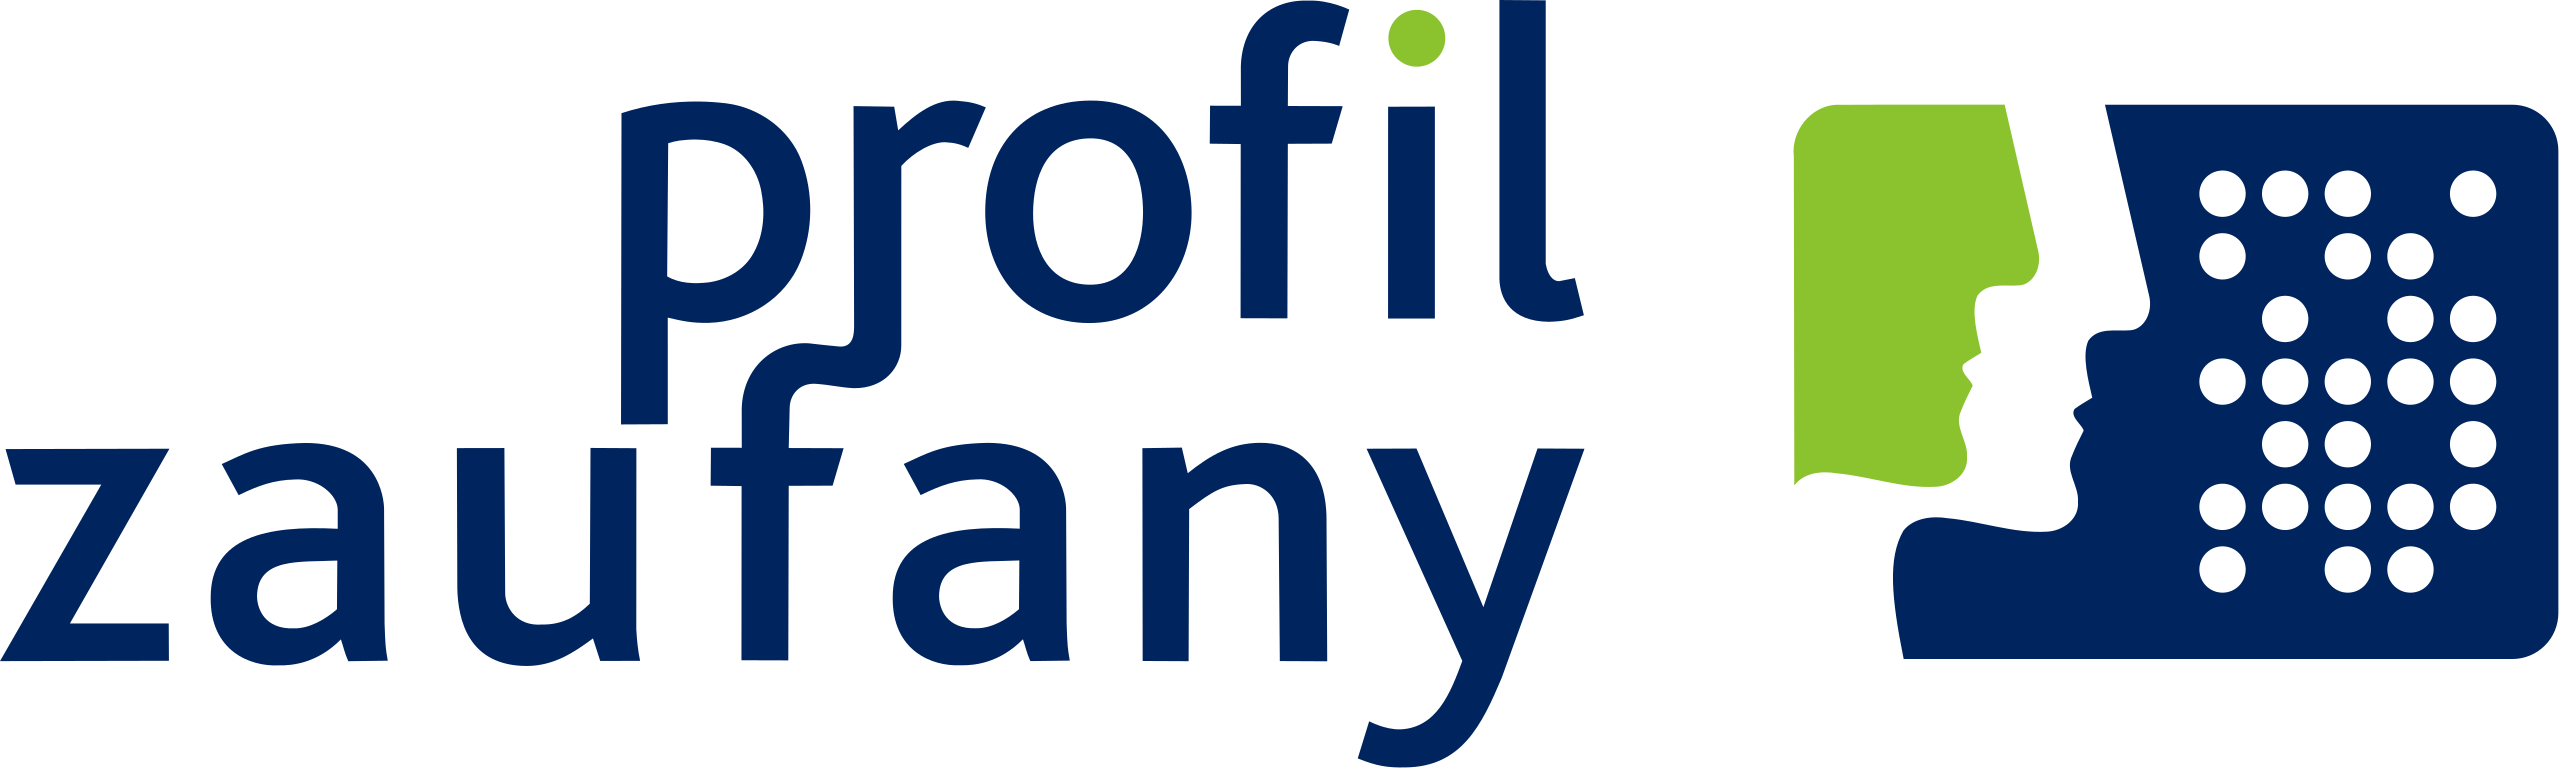 logo profil zaufany